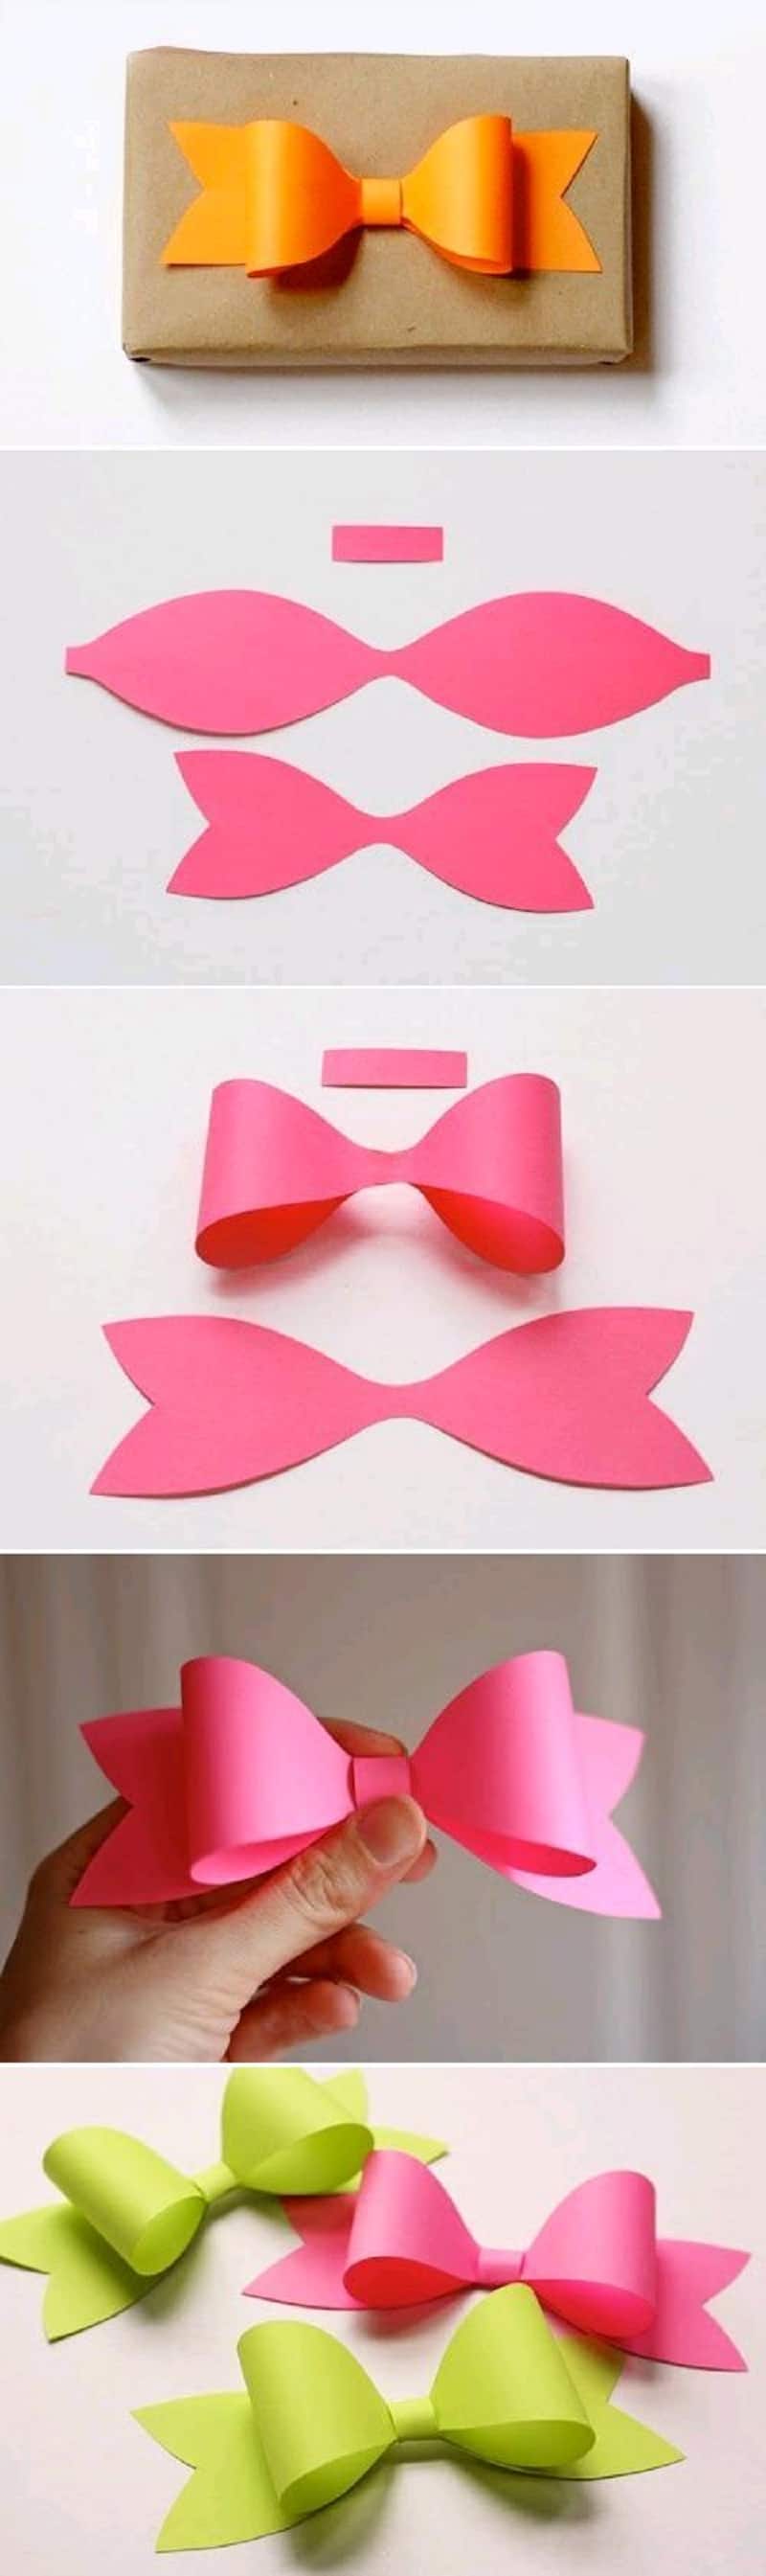 Foam paper gift bow